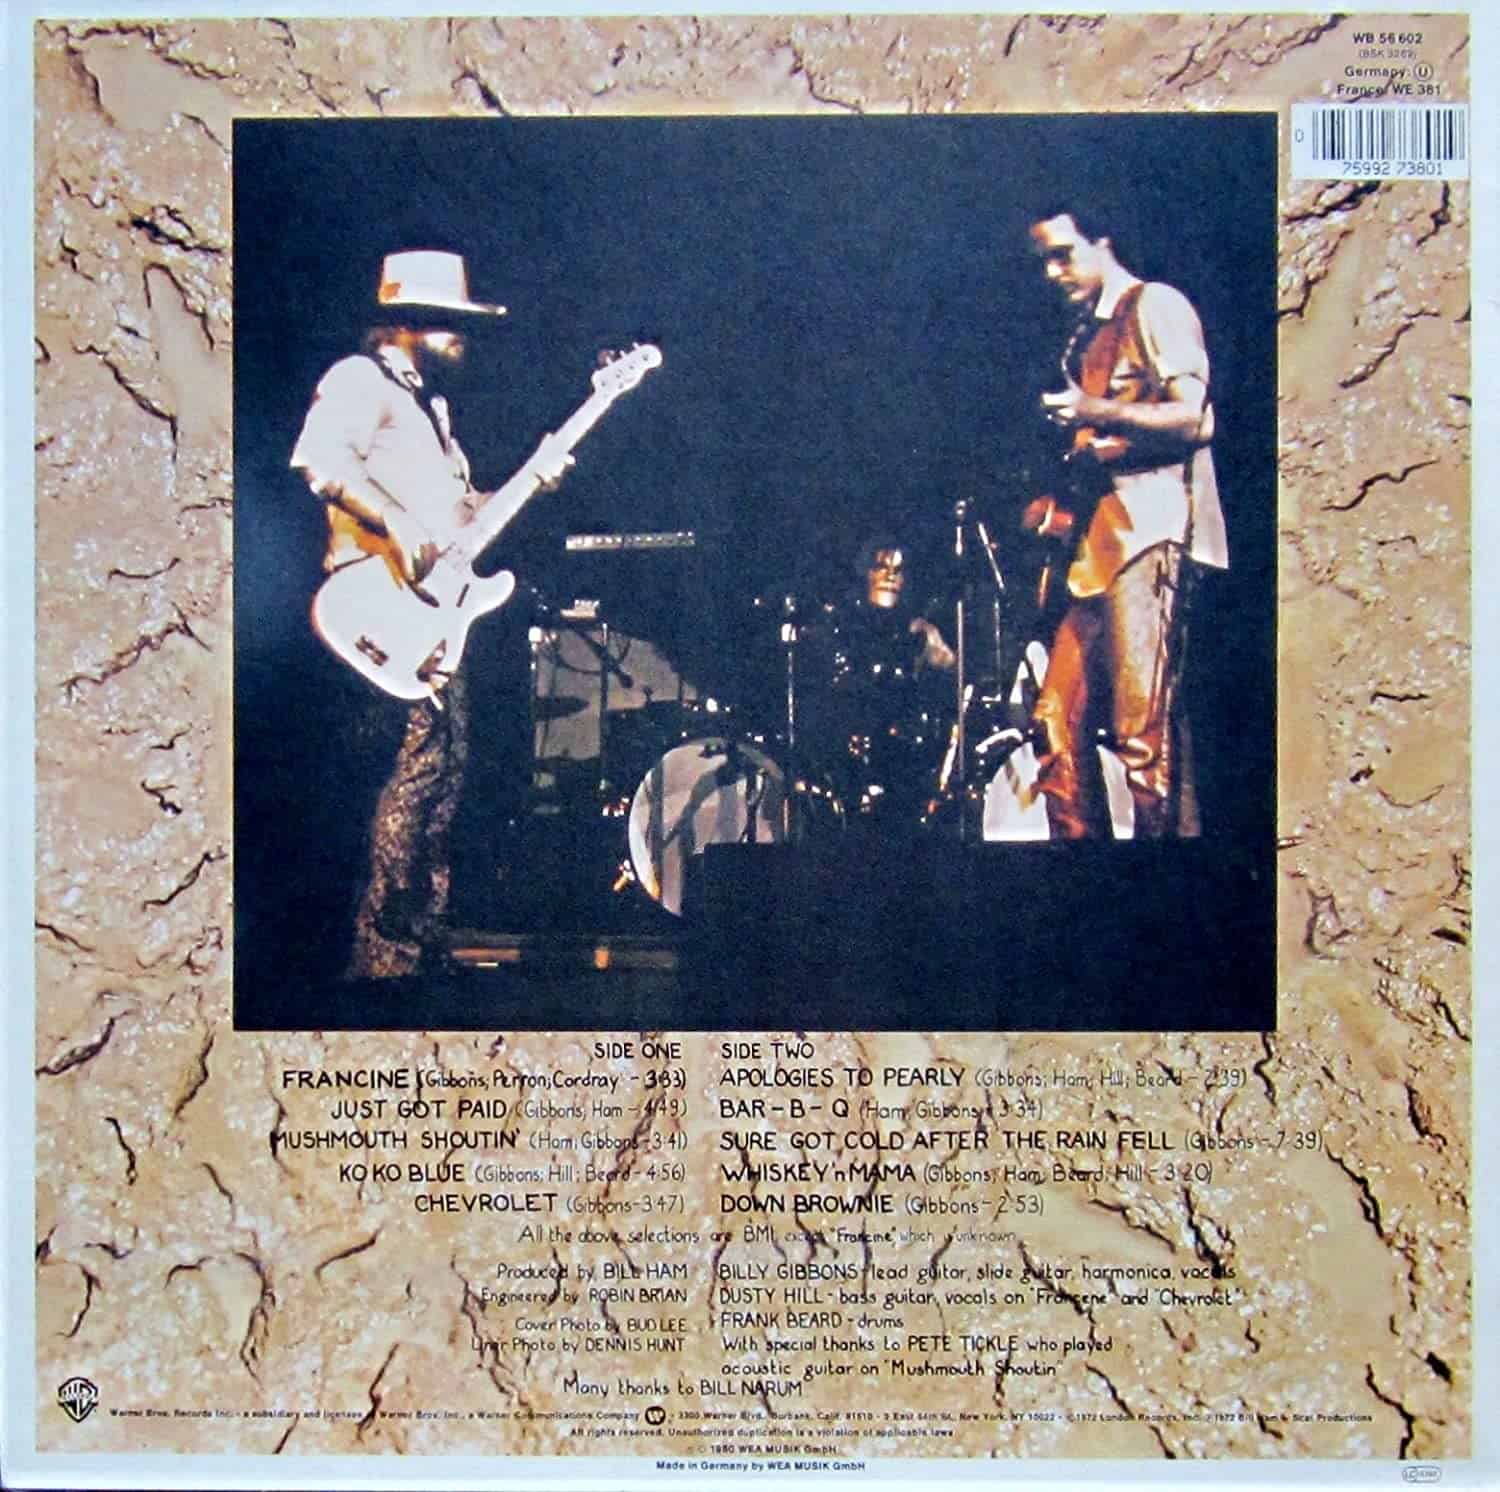 zz-top-rio-grande-mud-vinyl-record-album-2